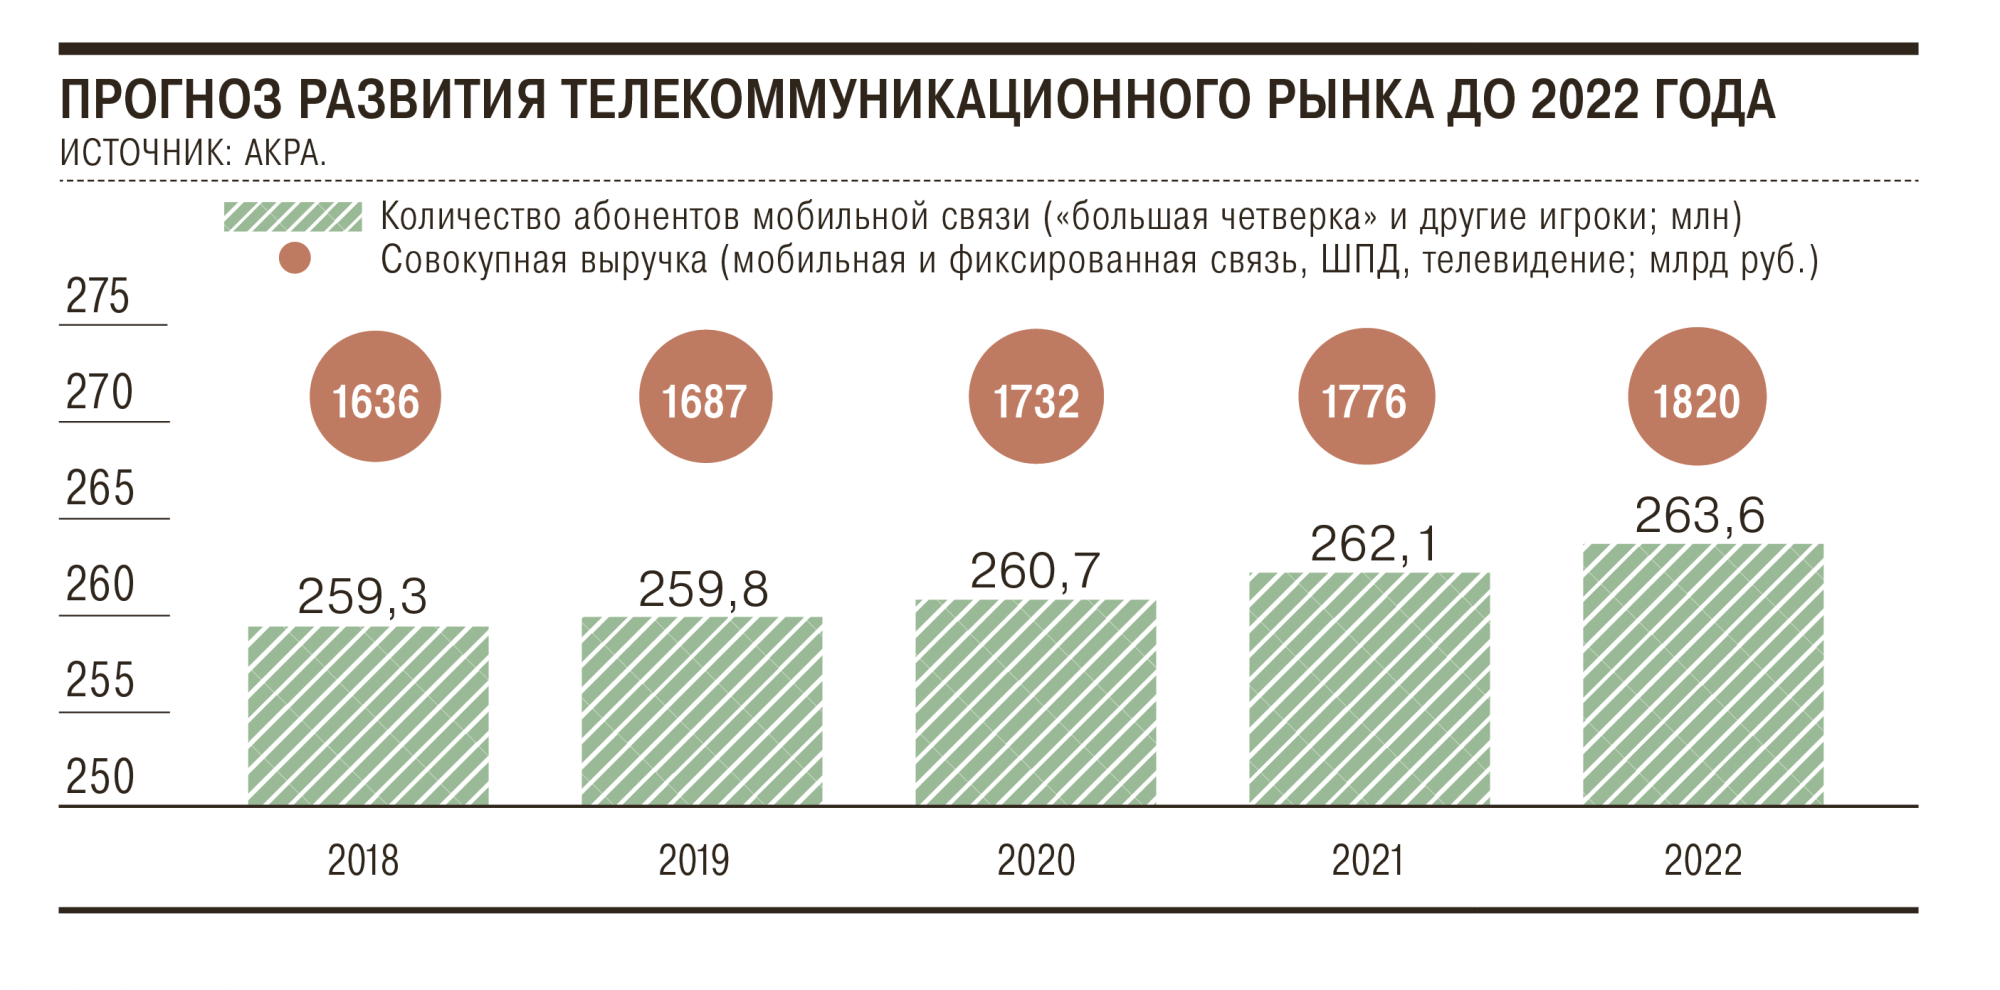 Расходы операторов на закон Яровой составят 250 мрд рублей за пять лет